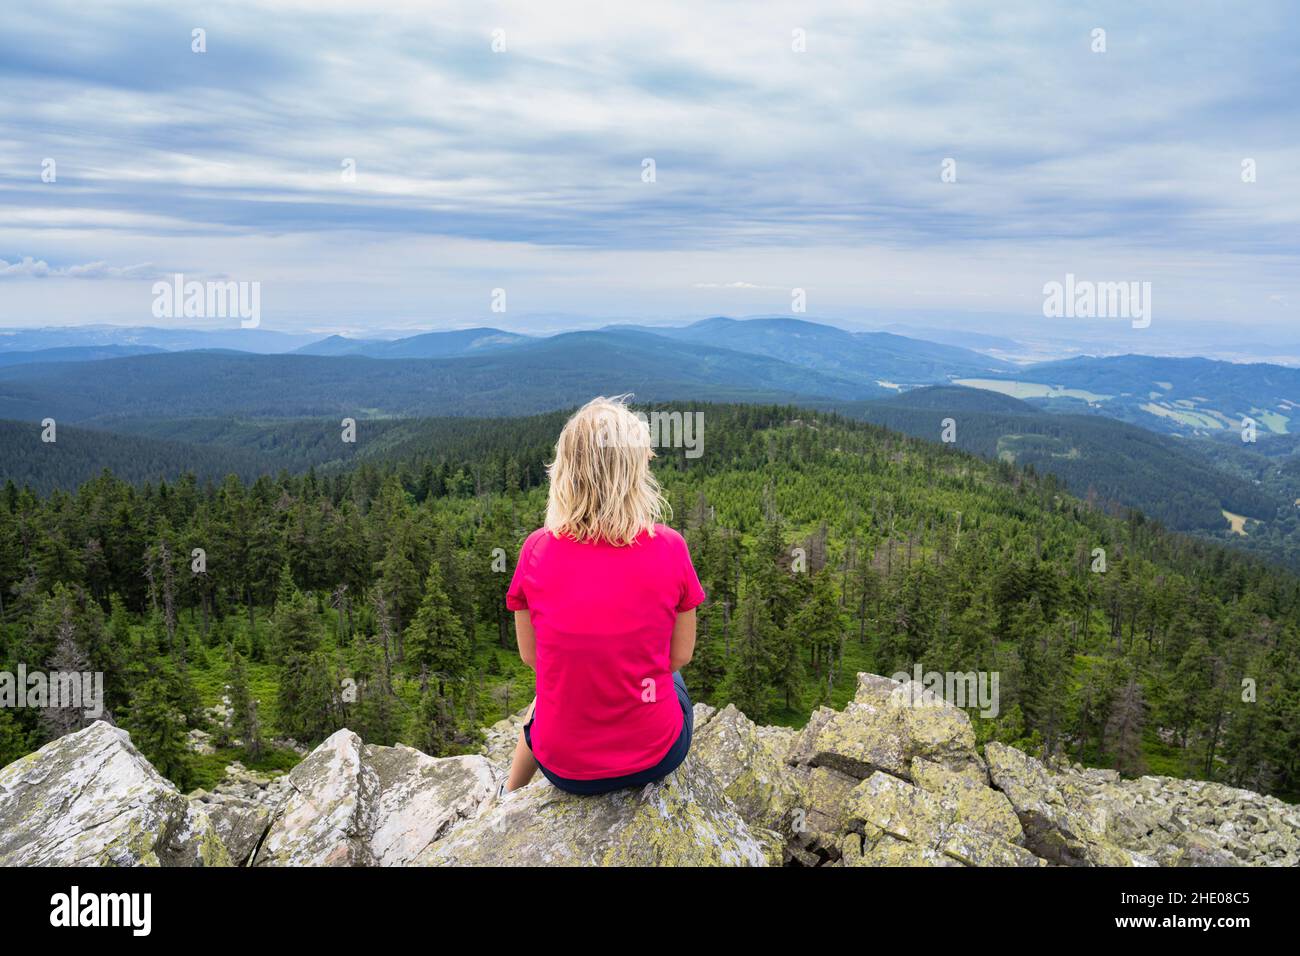 Ragazza viaggiatore sentirsi libero godere di vista di Mountains.Woman seduta su roccia dopo climbing.Adventure, sport, attività, libertà di viaggio wanderlust concetto. Foto Stock